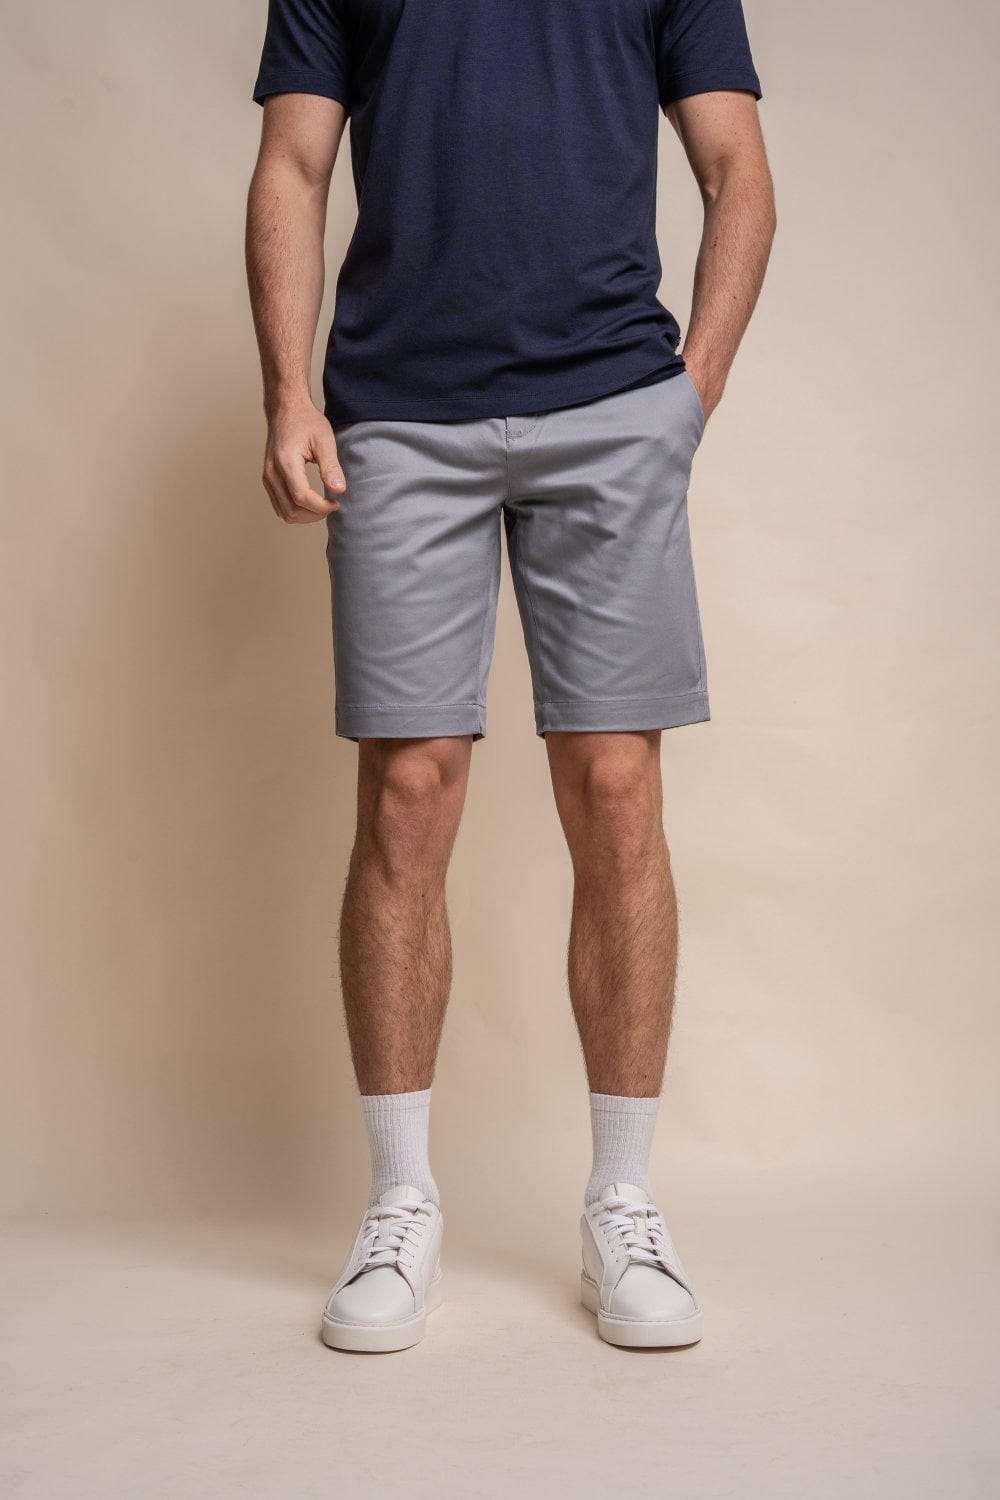 Shorts chino décontractés en coton pour hommes - DAKOTA - Grey